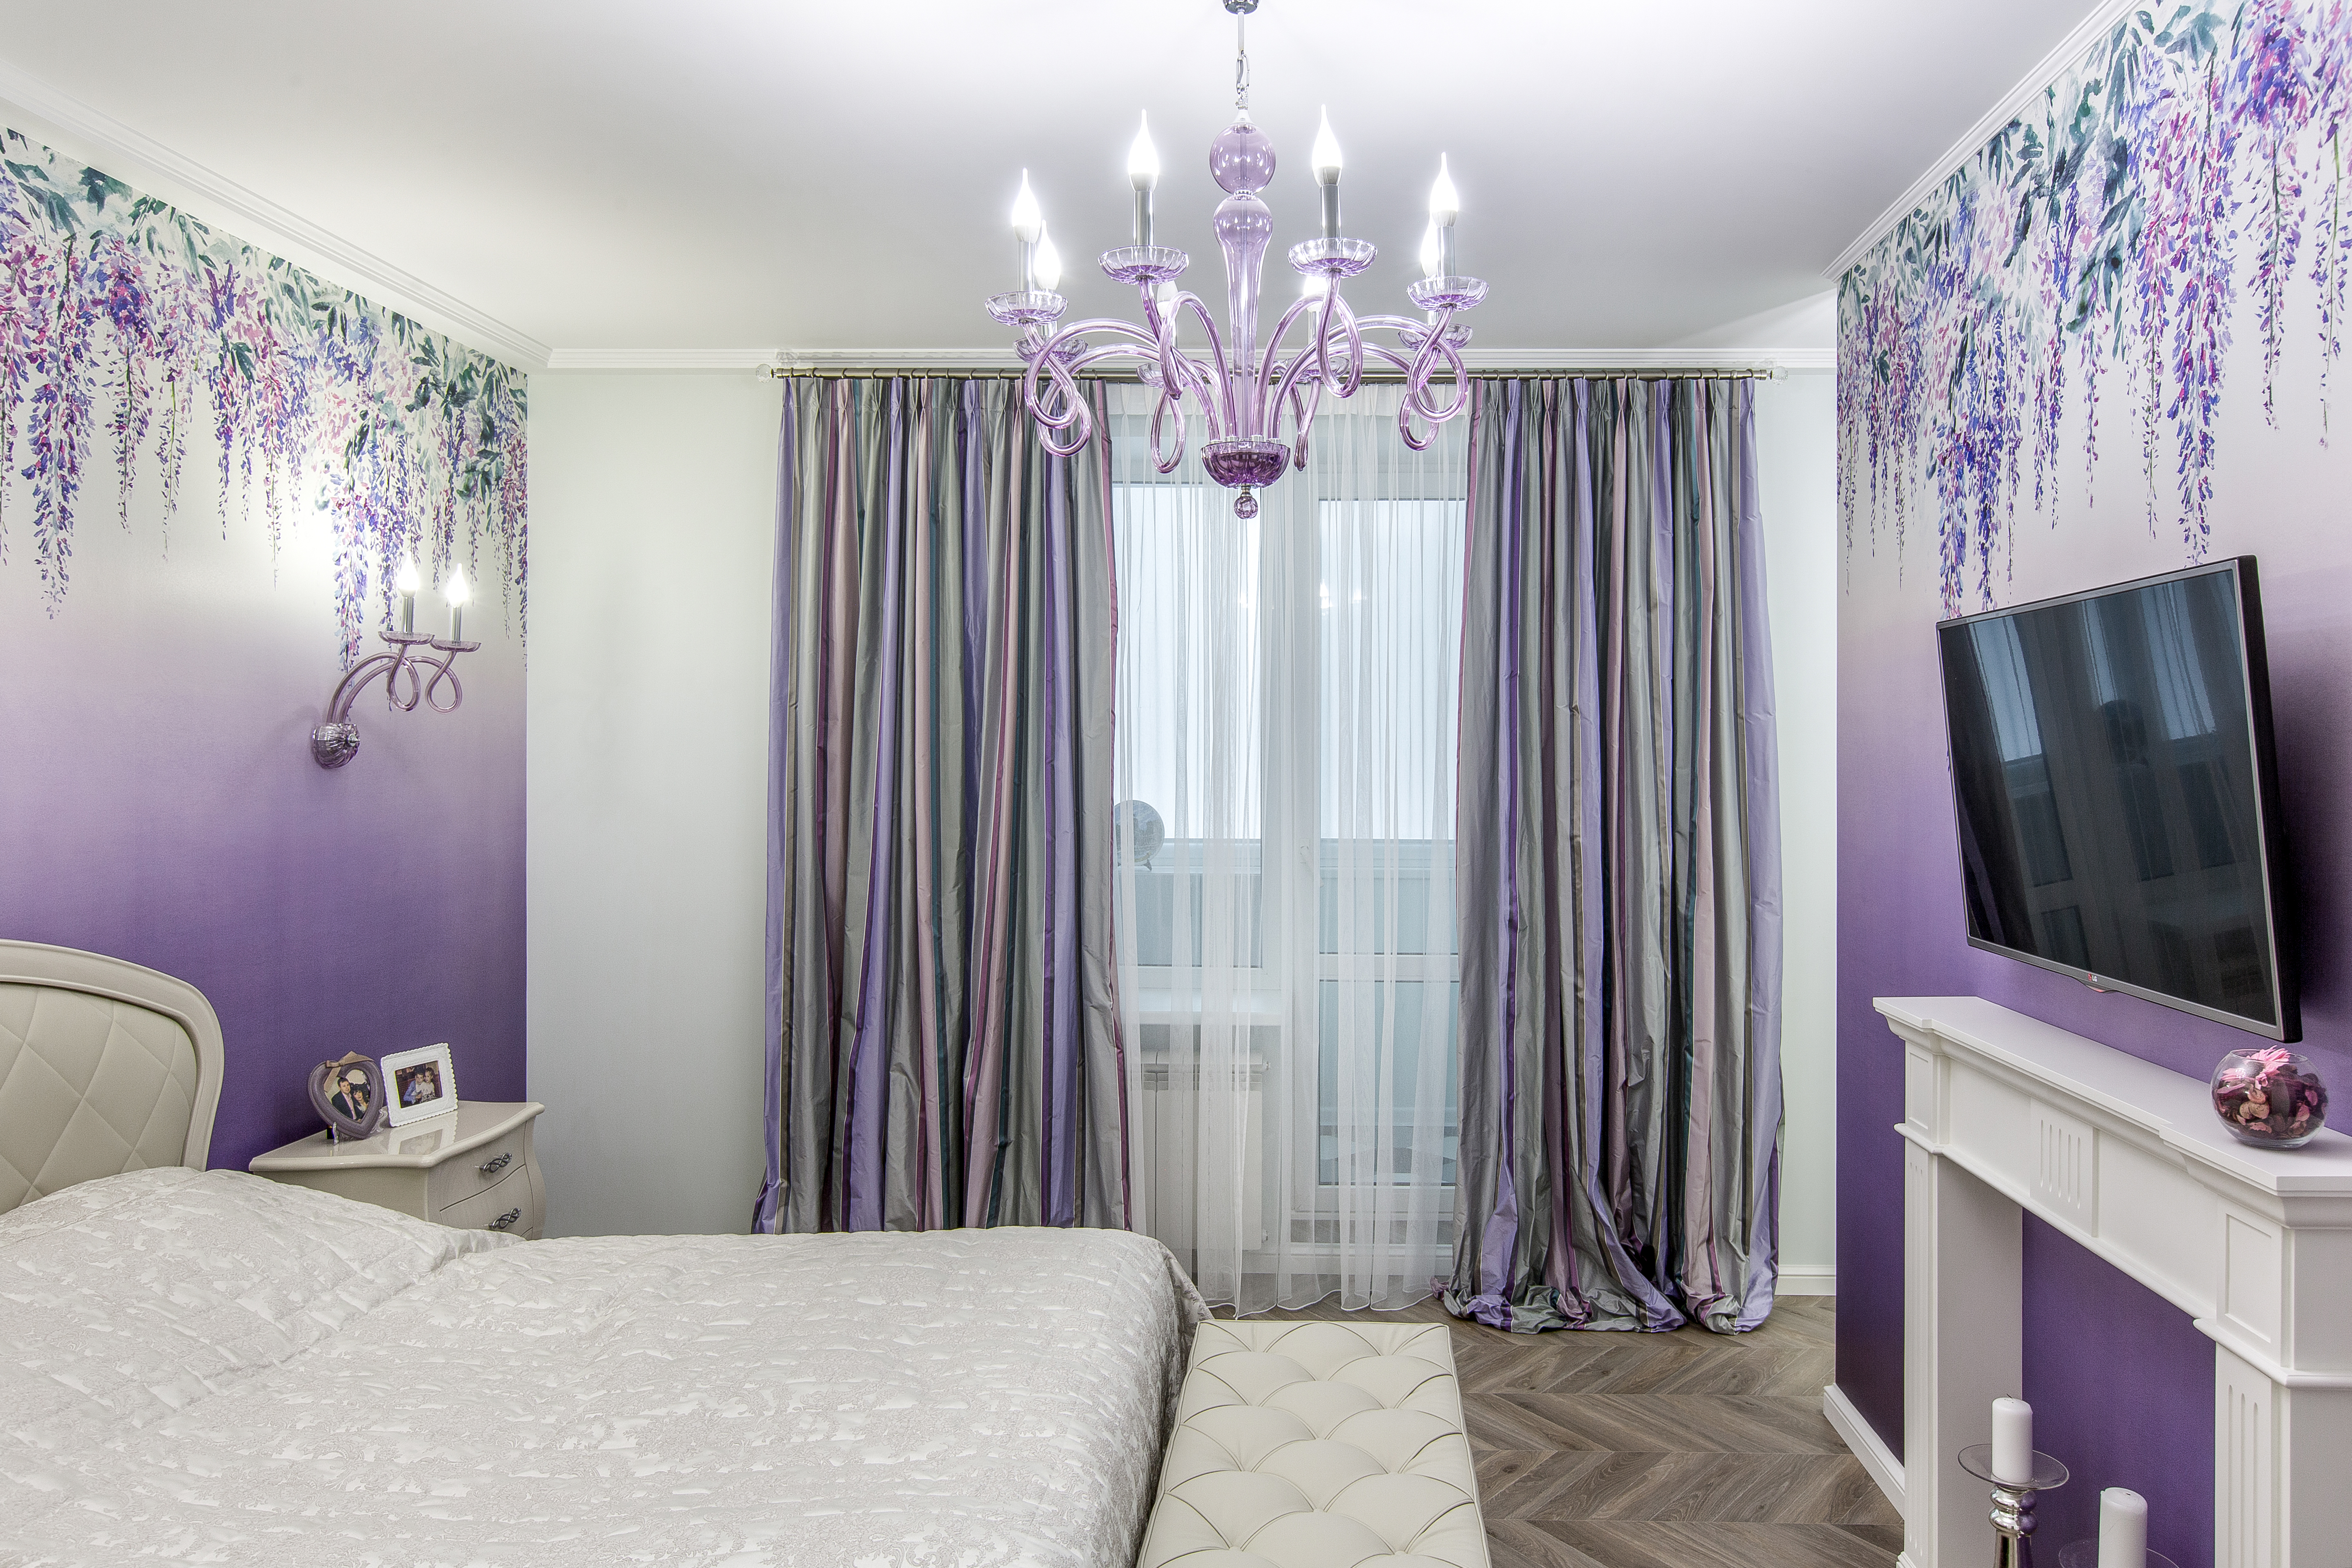 Обои с акварельными цветами и эффектом деграде, изящные шторы в полоску — всё идеально подходит для спальни.